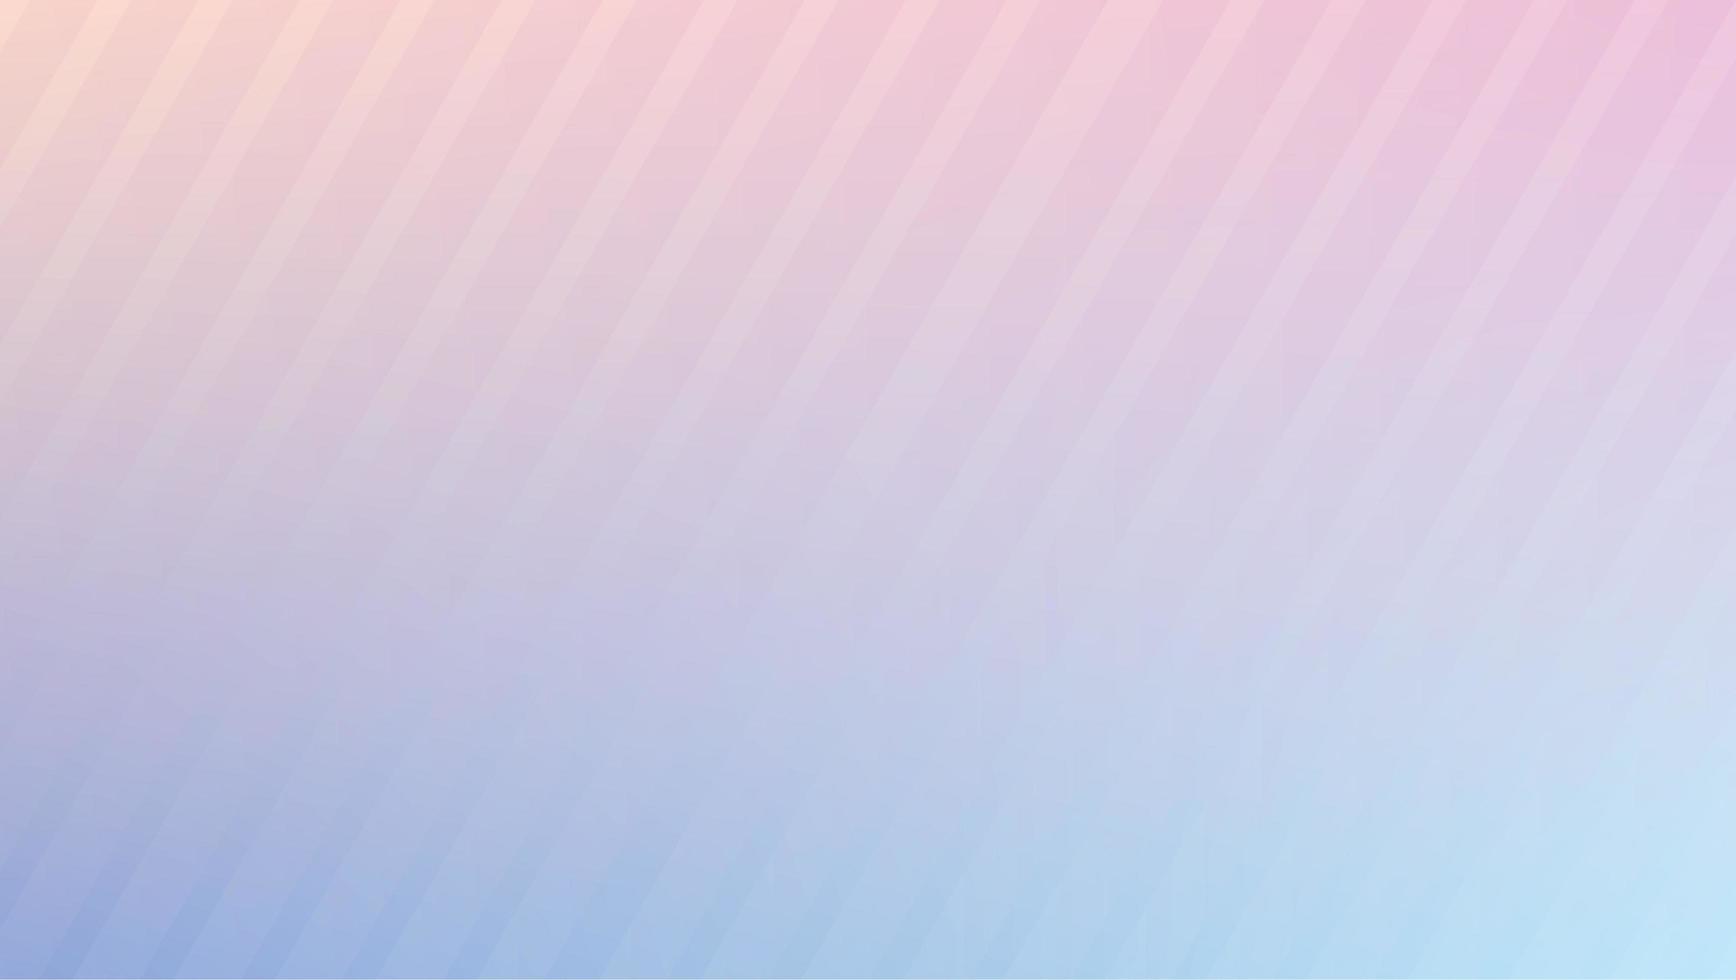 image de fond abstrait dégradé rose clair et bleu clair avec des lignes obliques photo